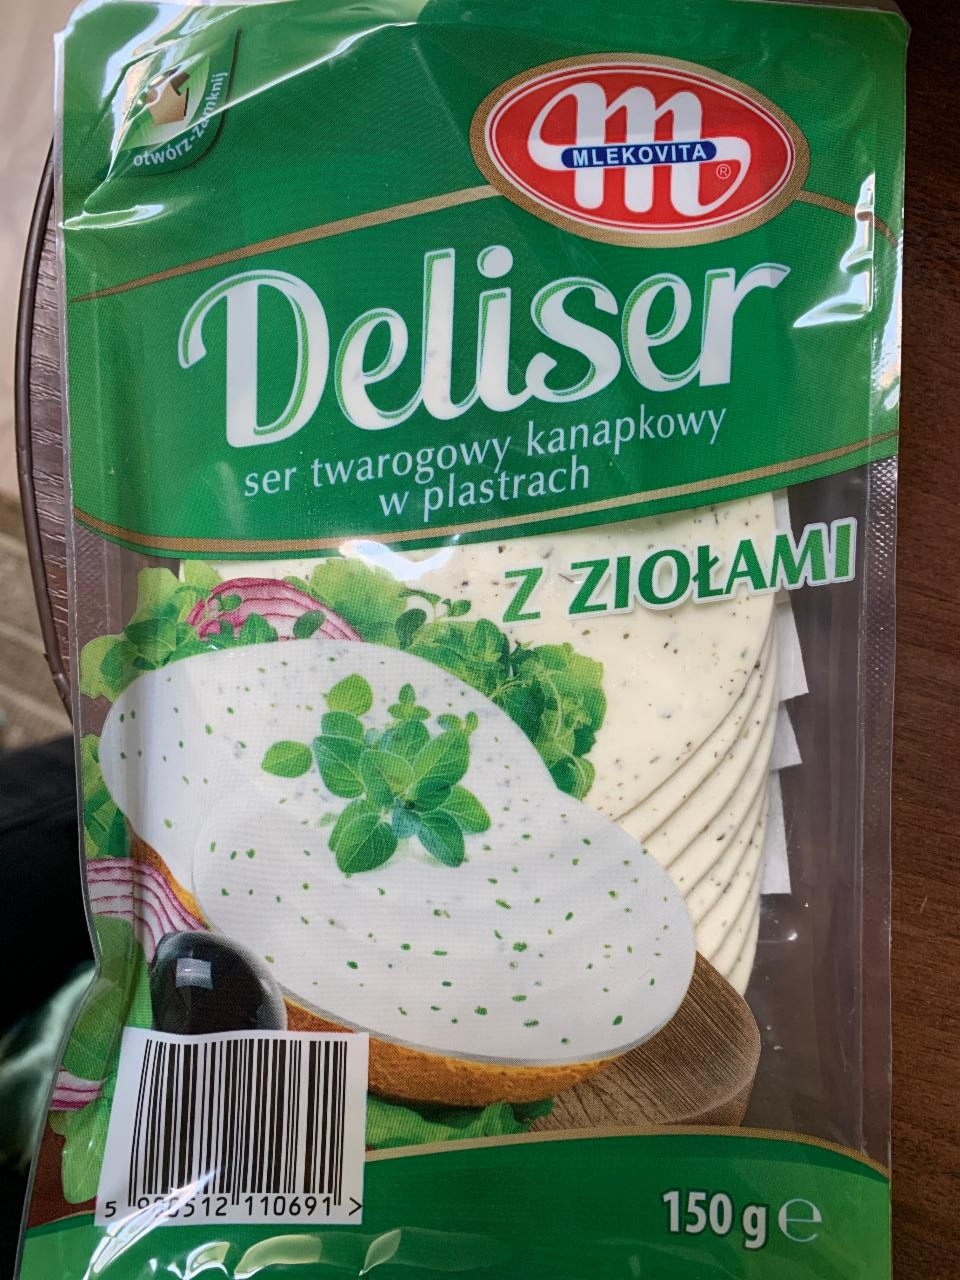 Fotografie - Deliser ser twarogowy kanapkowy w plastrach z ziołami Mlekovita